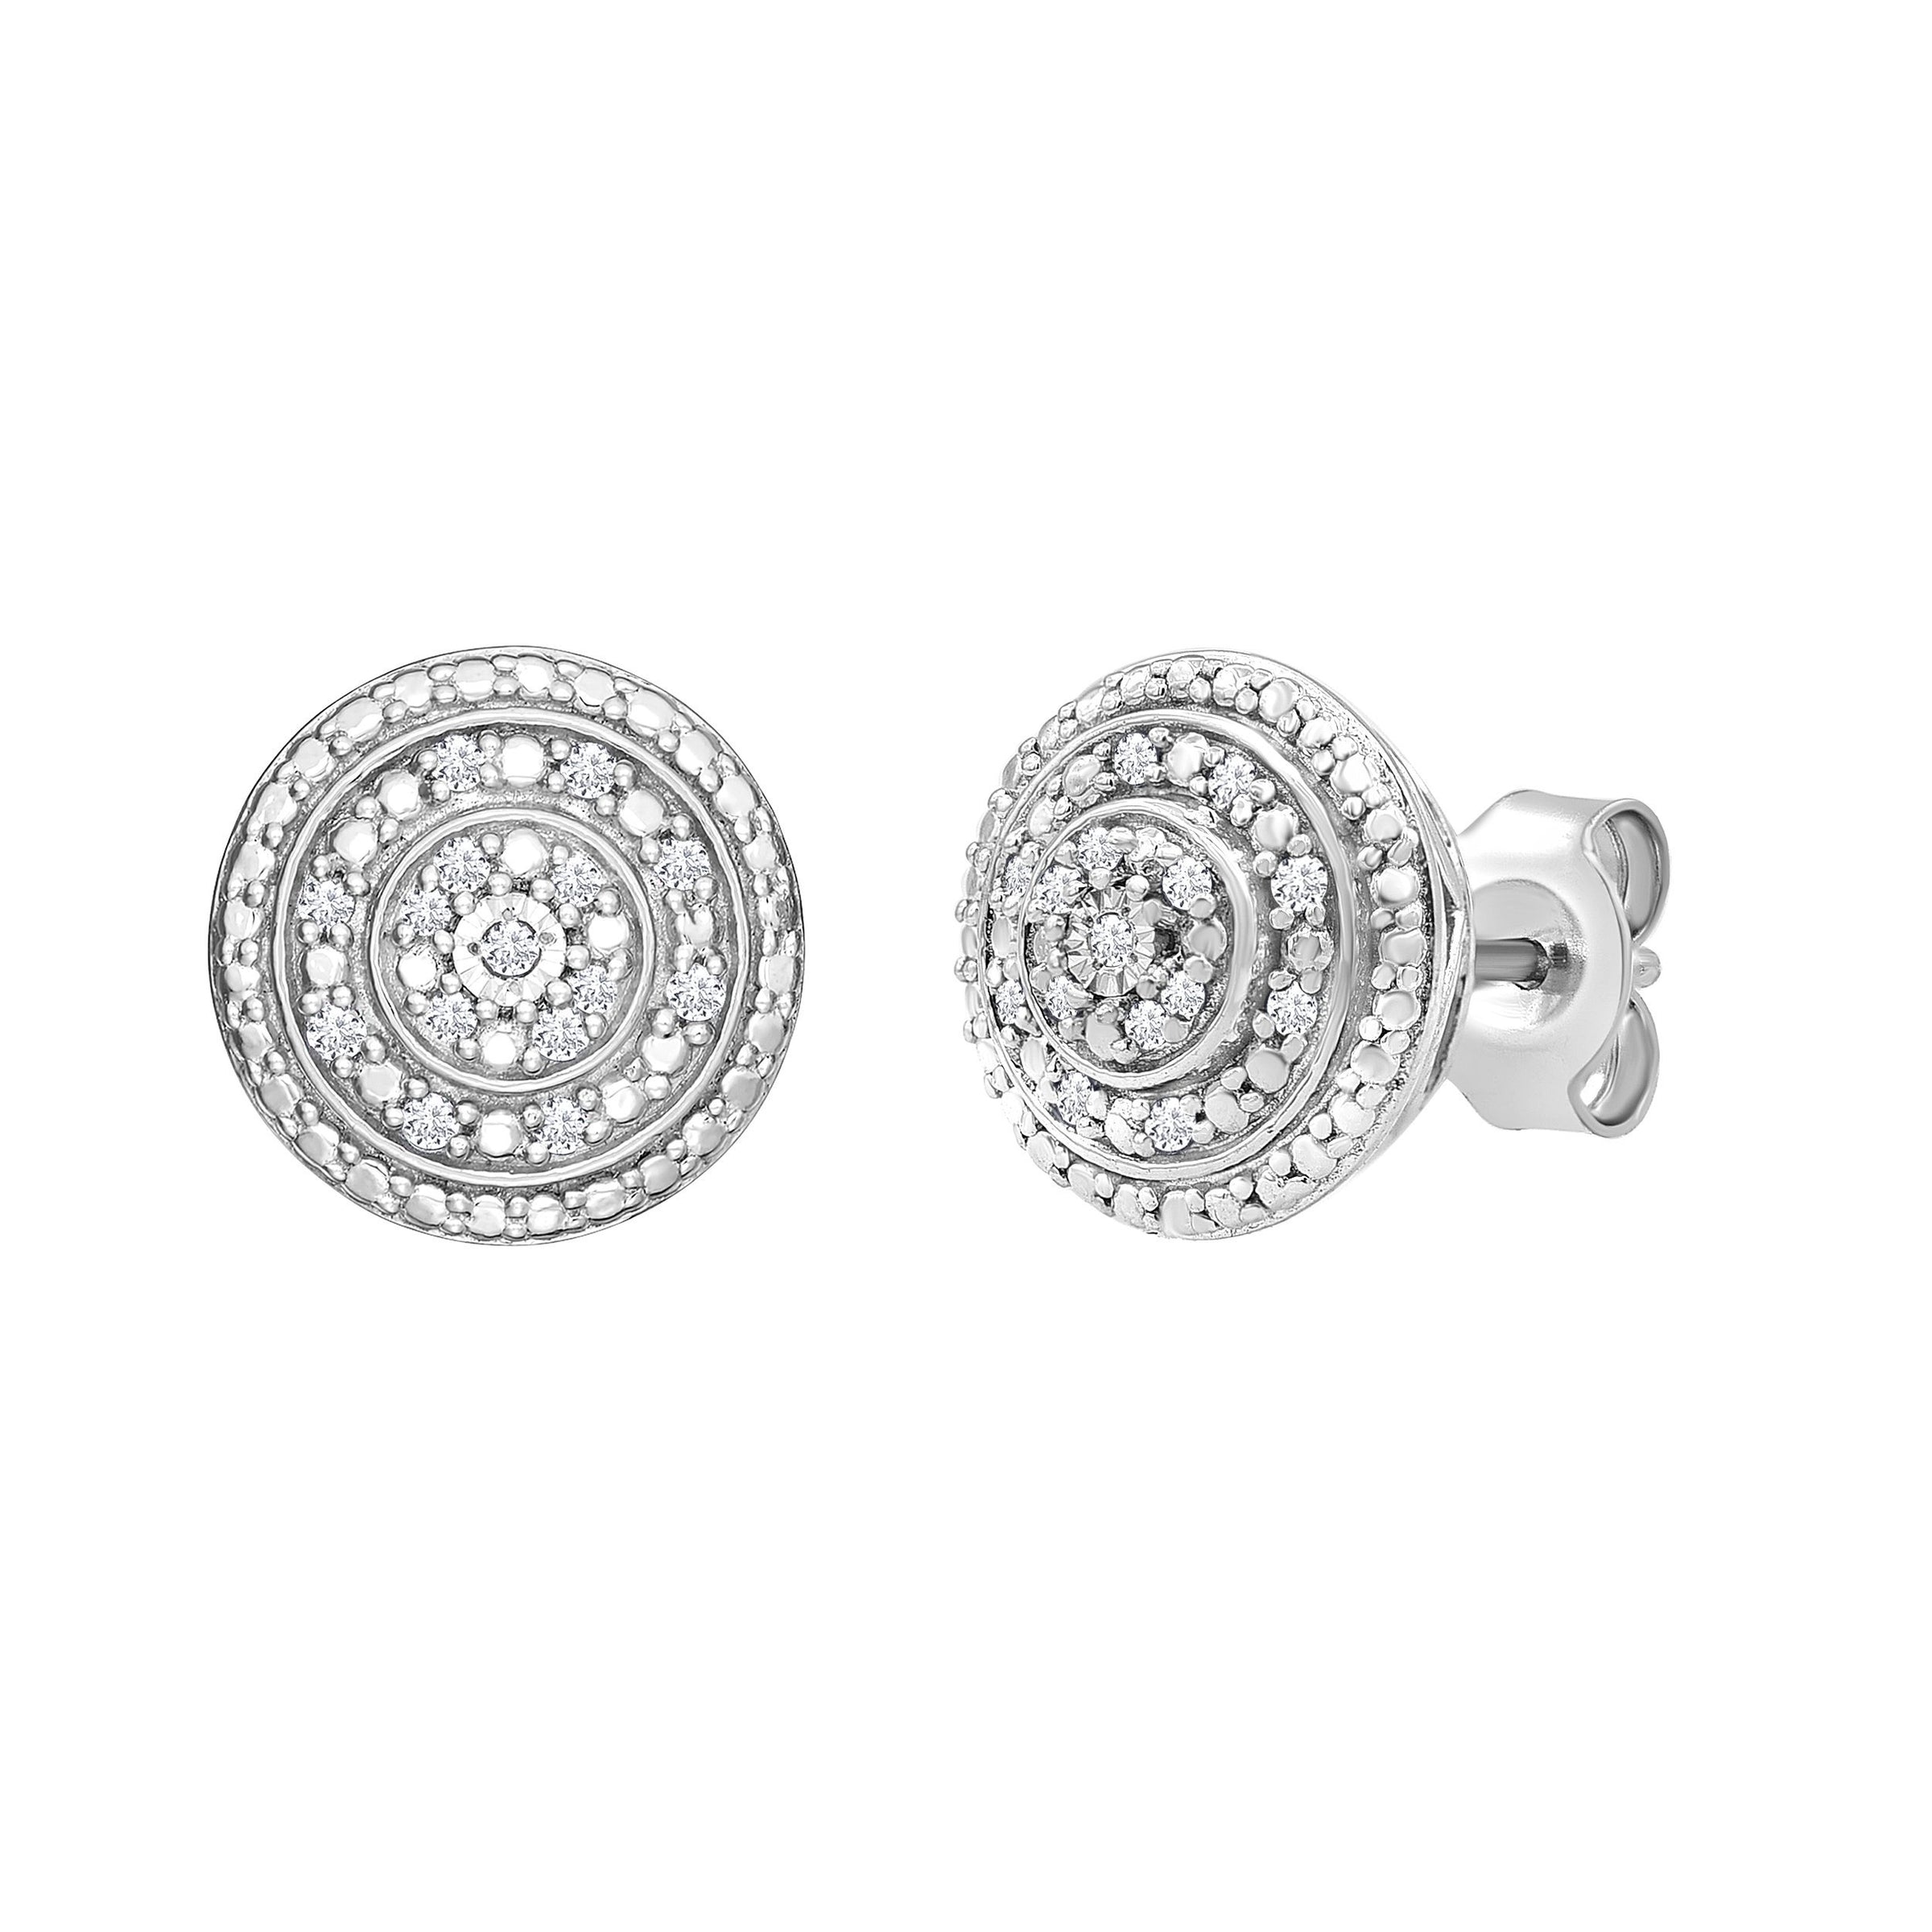 Diamond Halo Stud Earrings in Sterling Silver Earrings Bevilles 